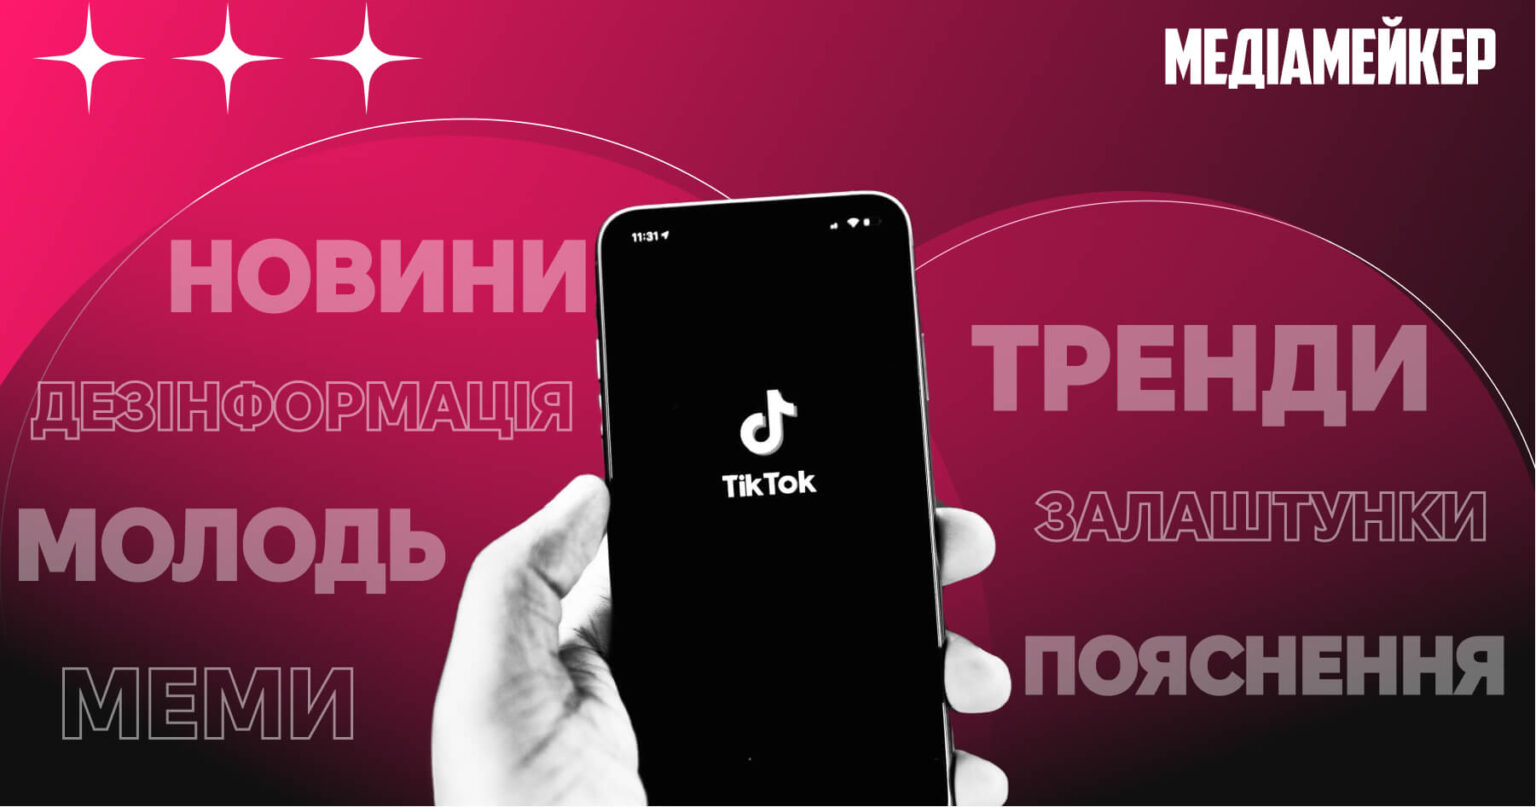 Як українські медіа використовують TikTok: про цікаві формати, монетизацію та креатив